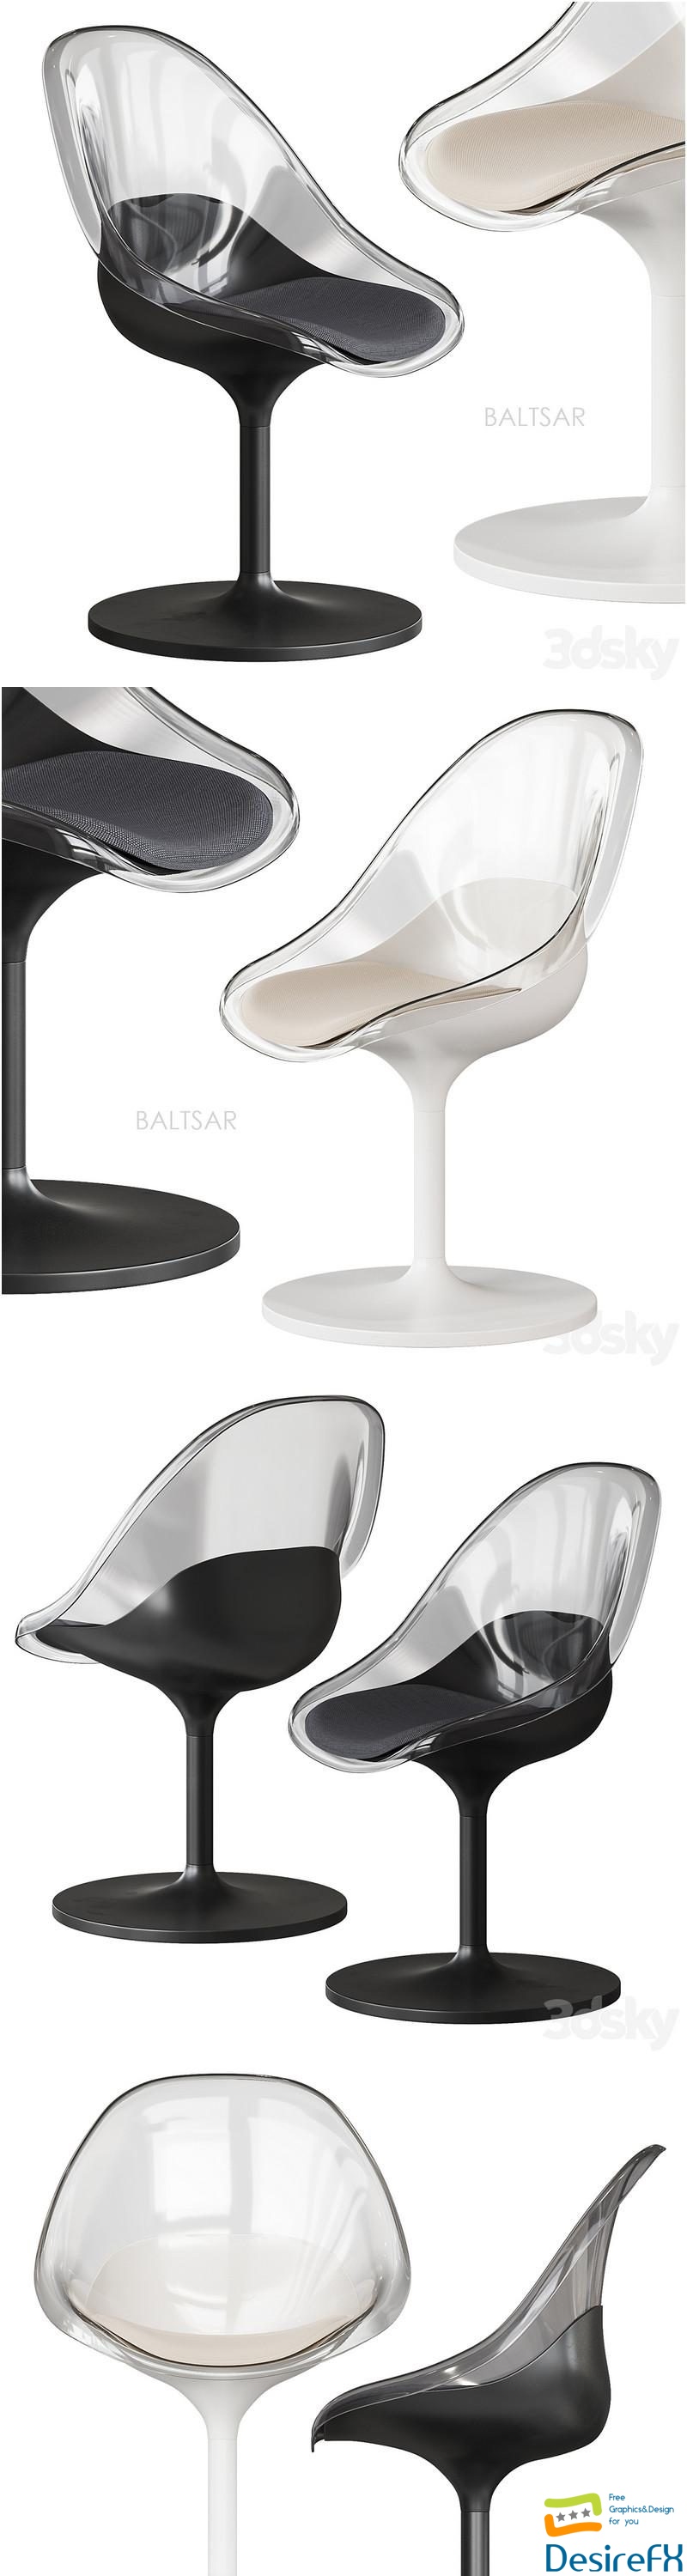 BALTSAR chair Ikea 3D Model